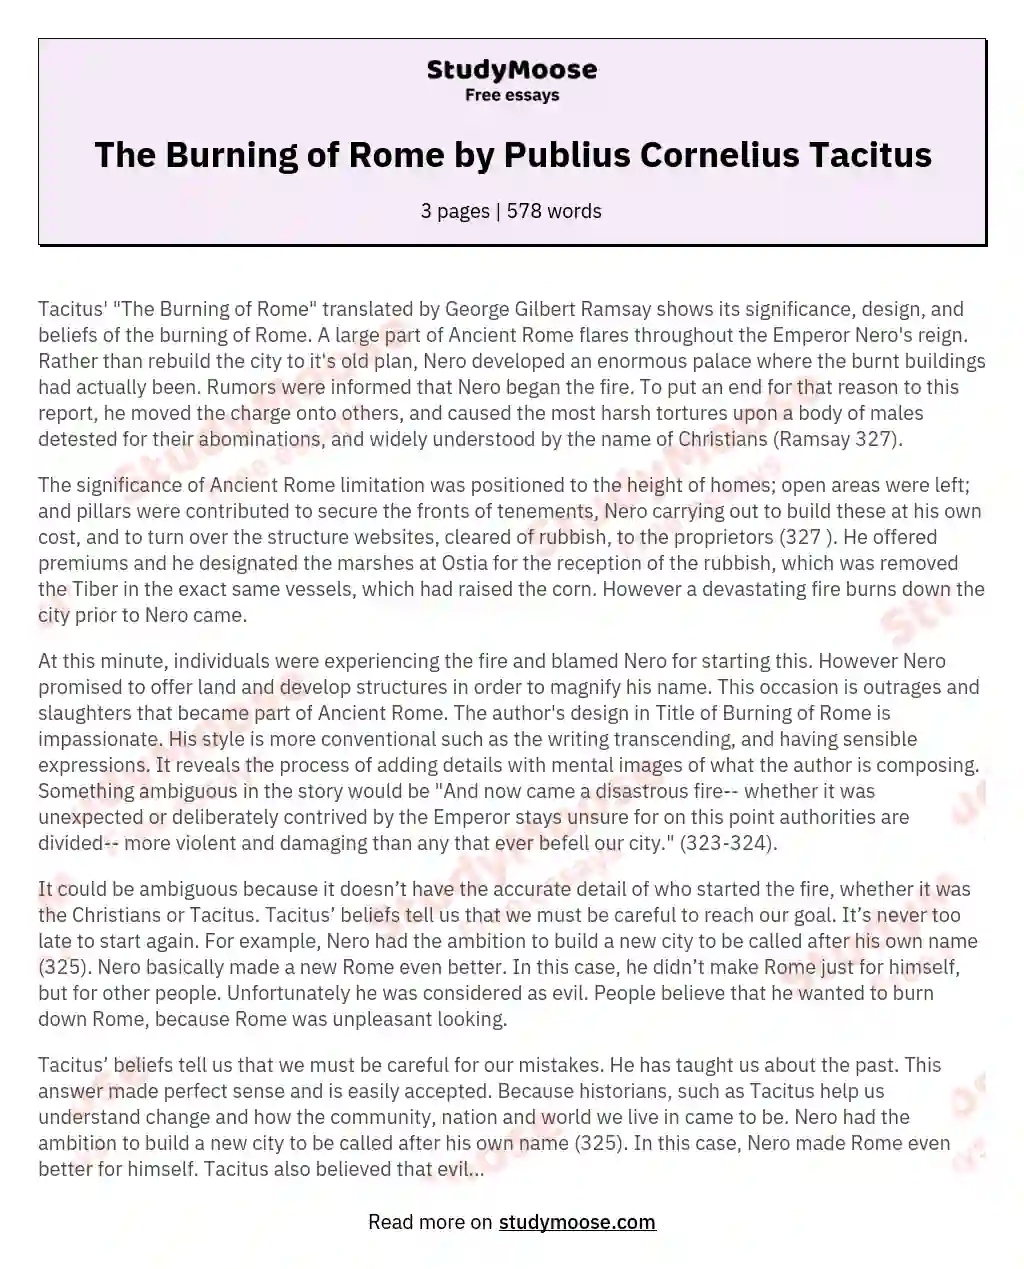 The Burning of Rome by Publius Cornelius Tacitus essay